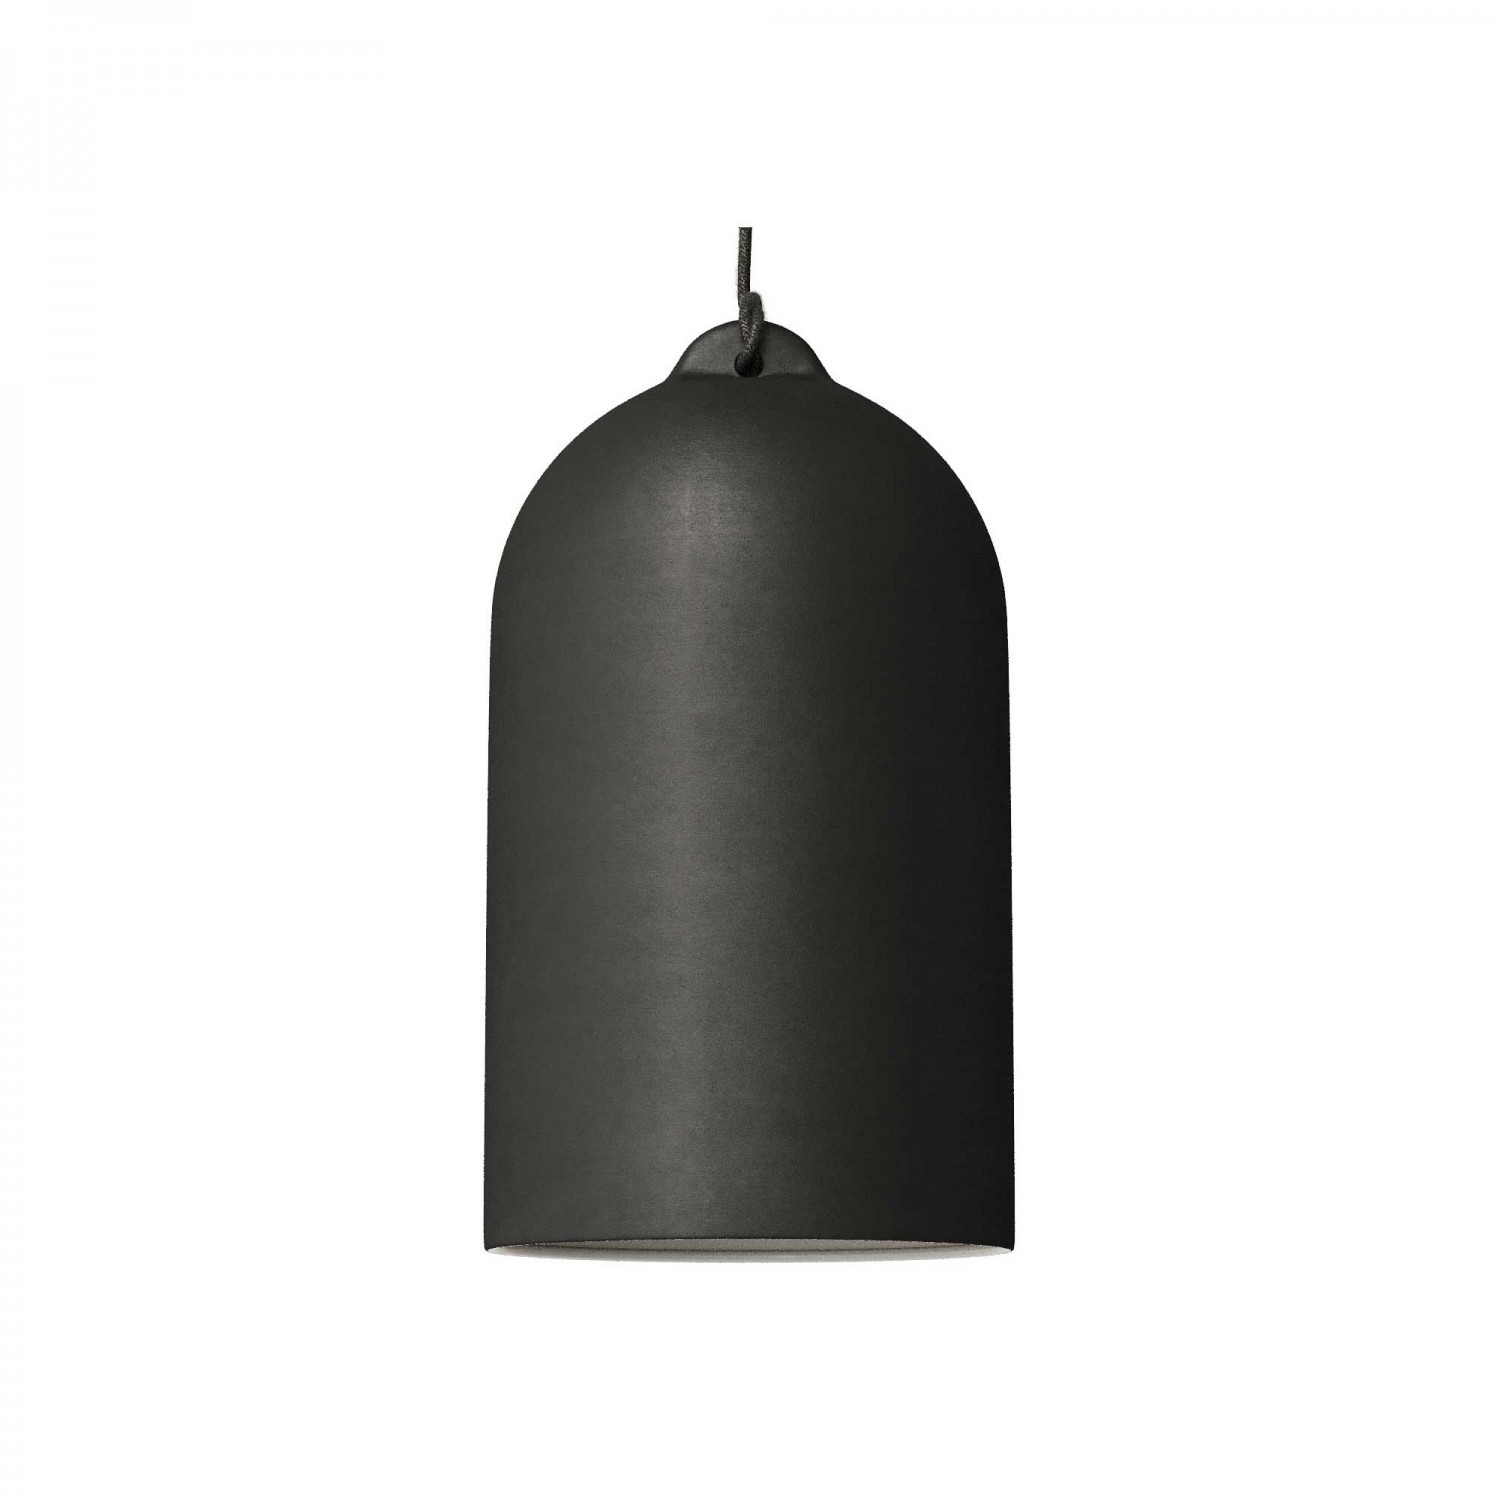 Pendelleuchte mit Textilkabel, glockenförmiger Lampenschirm XL und Metall-Zubehör - Hergestellt in Italien